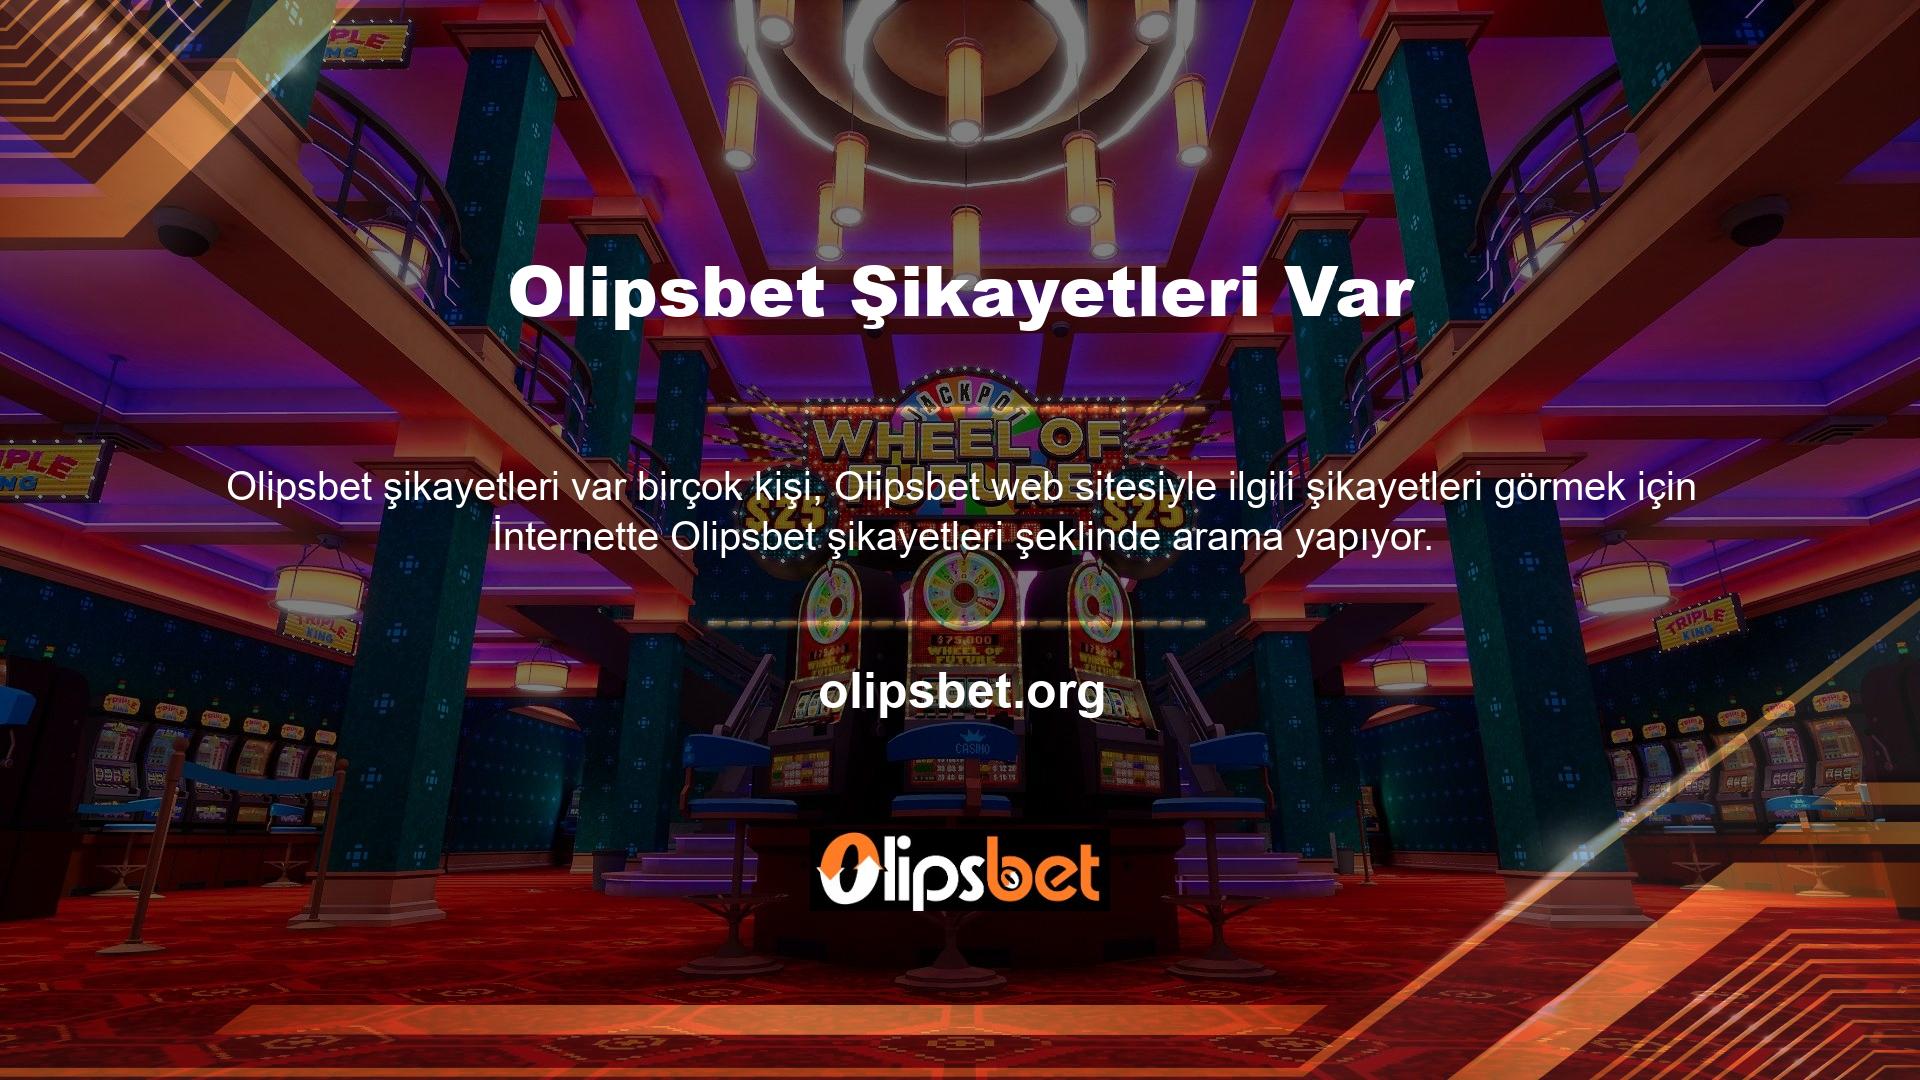 Ancak bu arama, Olipsbet web sitesinde herhangi bir şikayet olmadığını ortaya koymaktadır